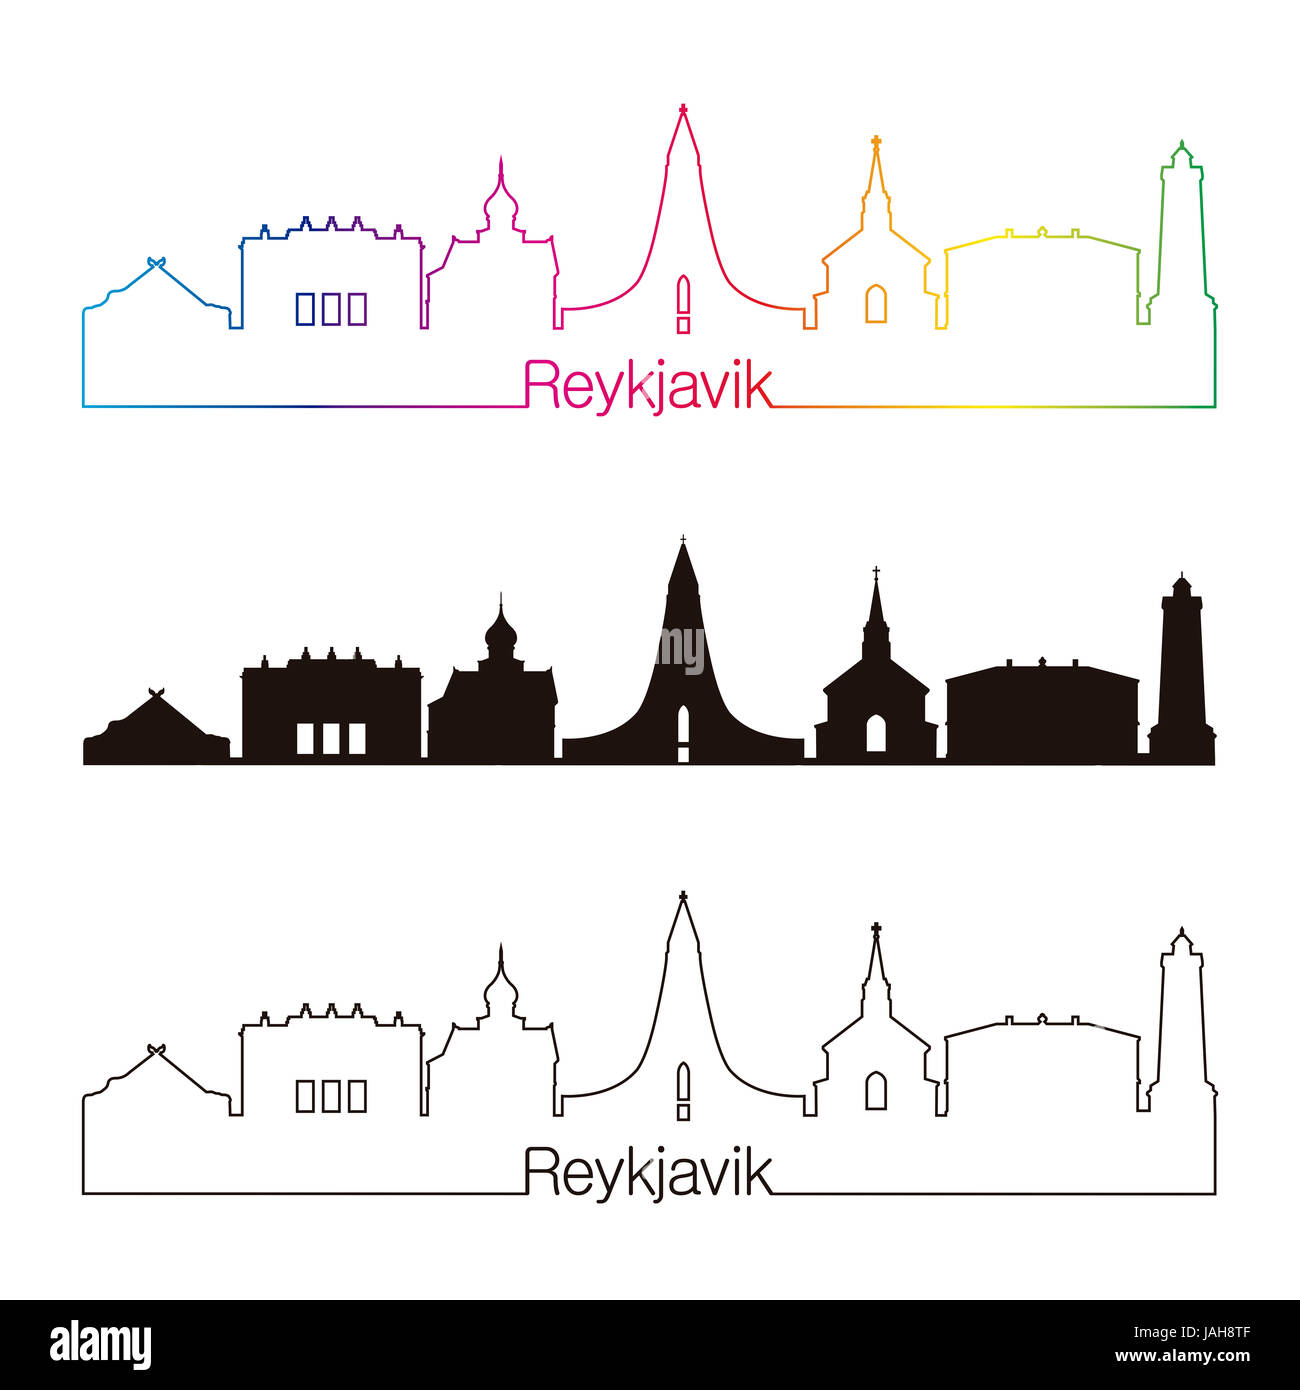 V2 de Reykjavik skyline style linéaire avec rainbow en fichier vectoriel éditable Banque D'Images